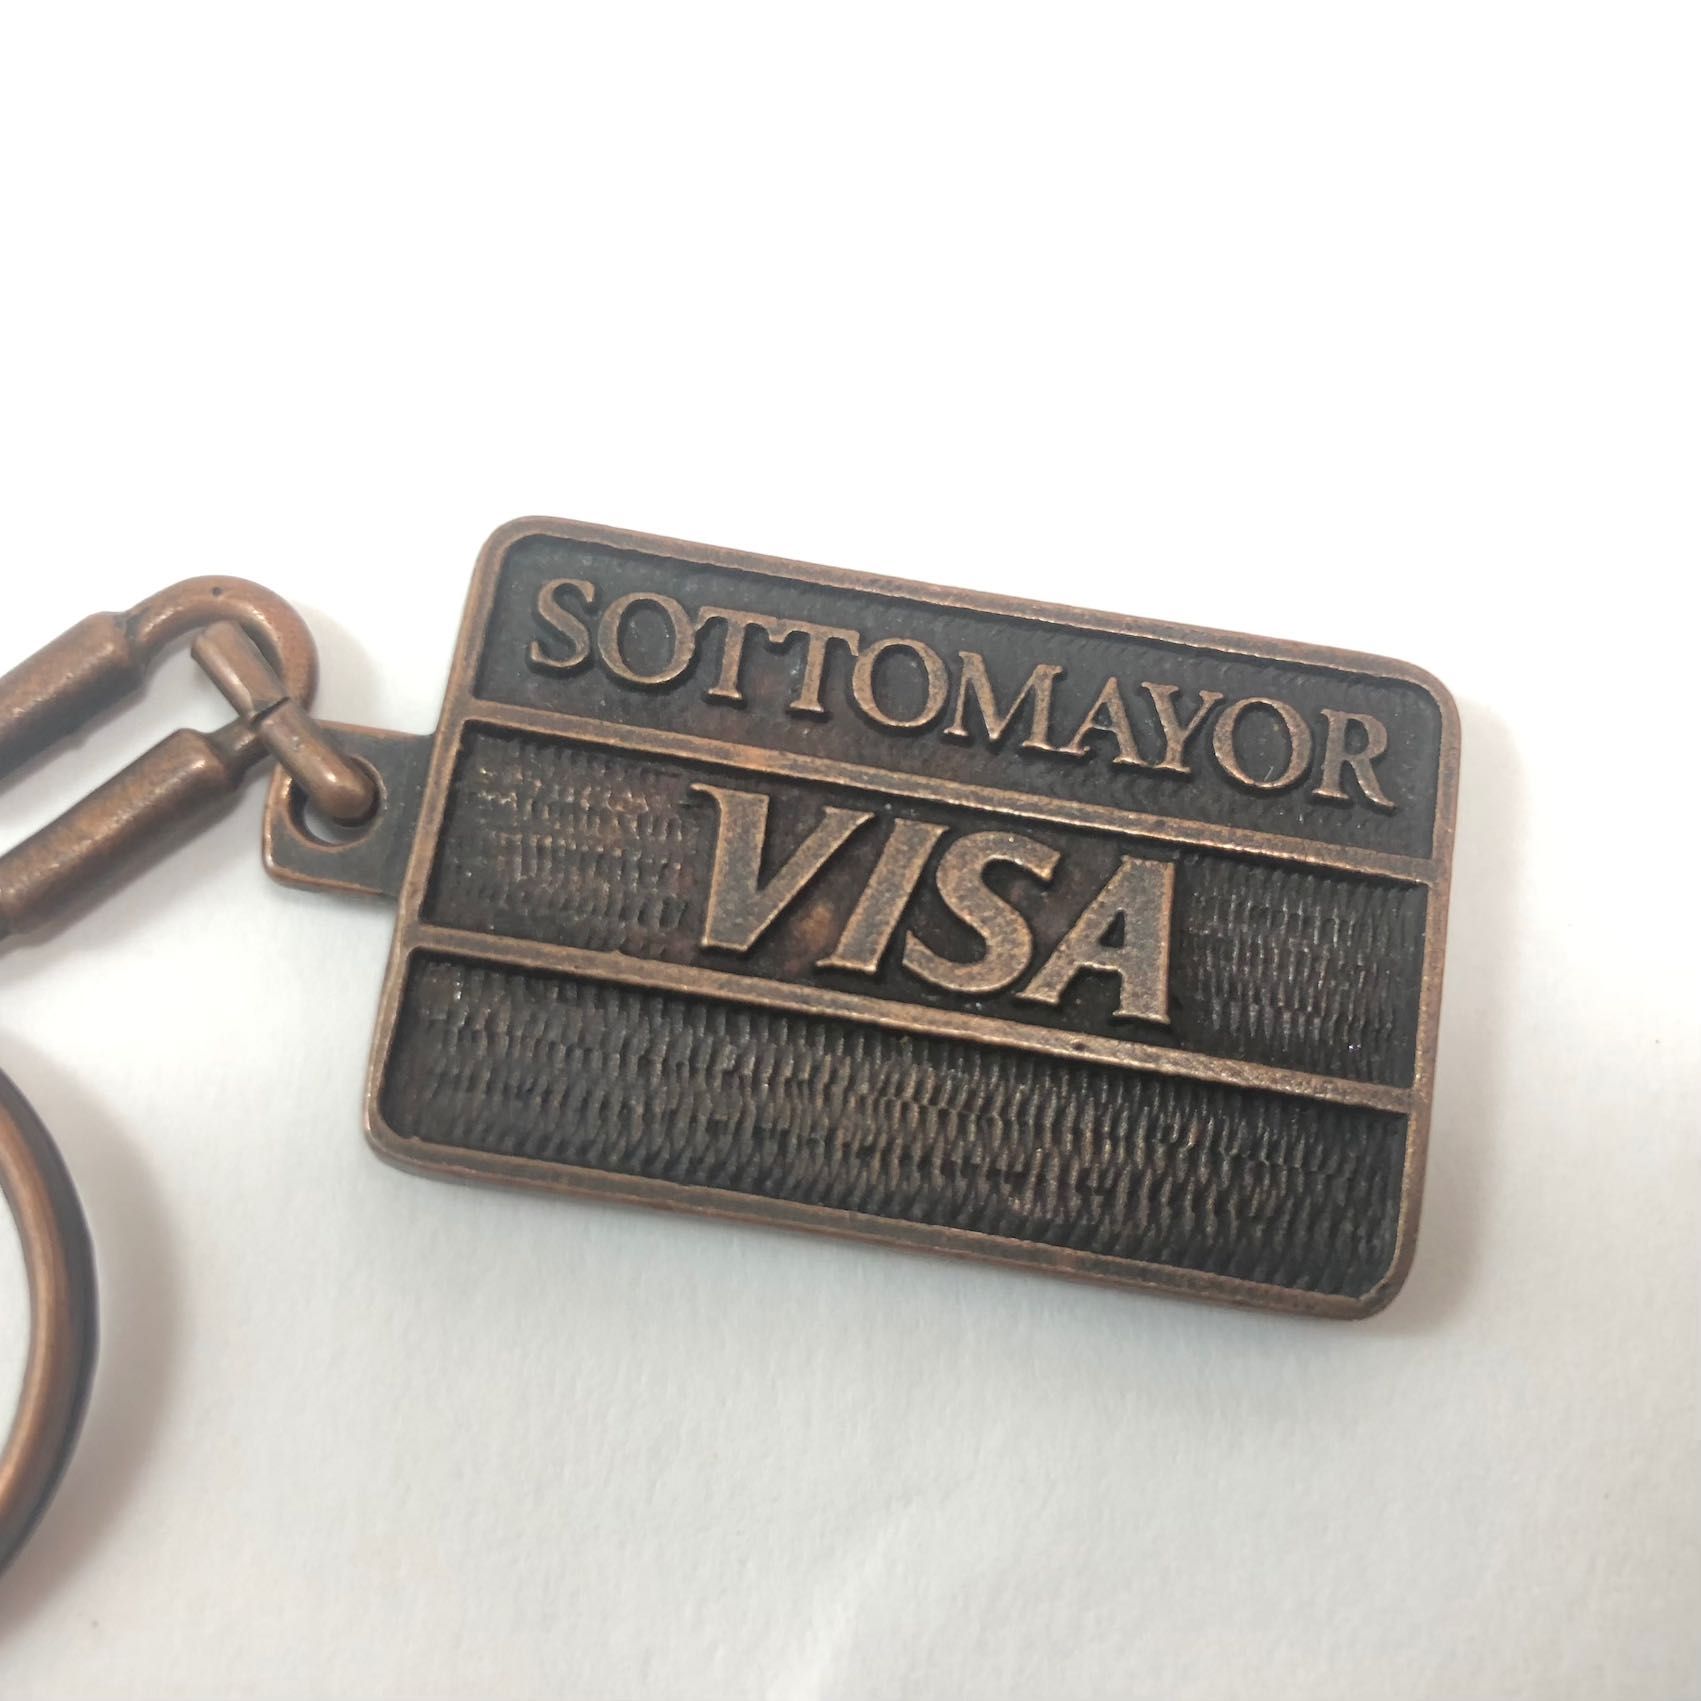 Porta-chaves Banco Pinto& Sottomayor